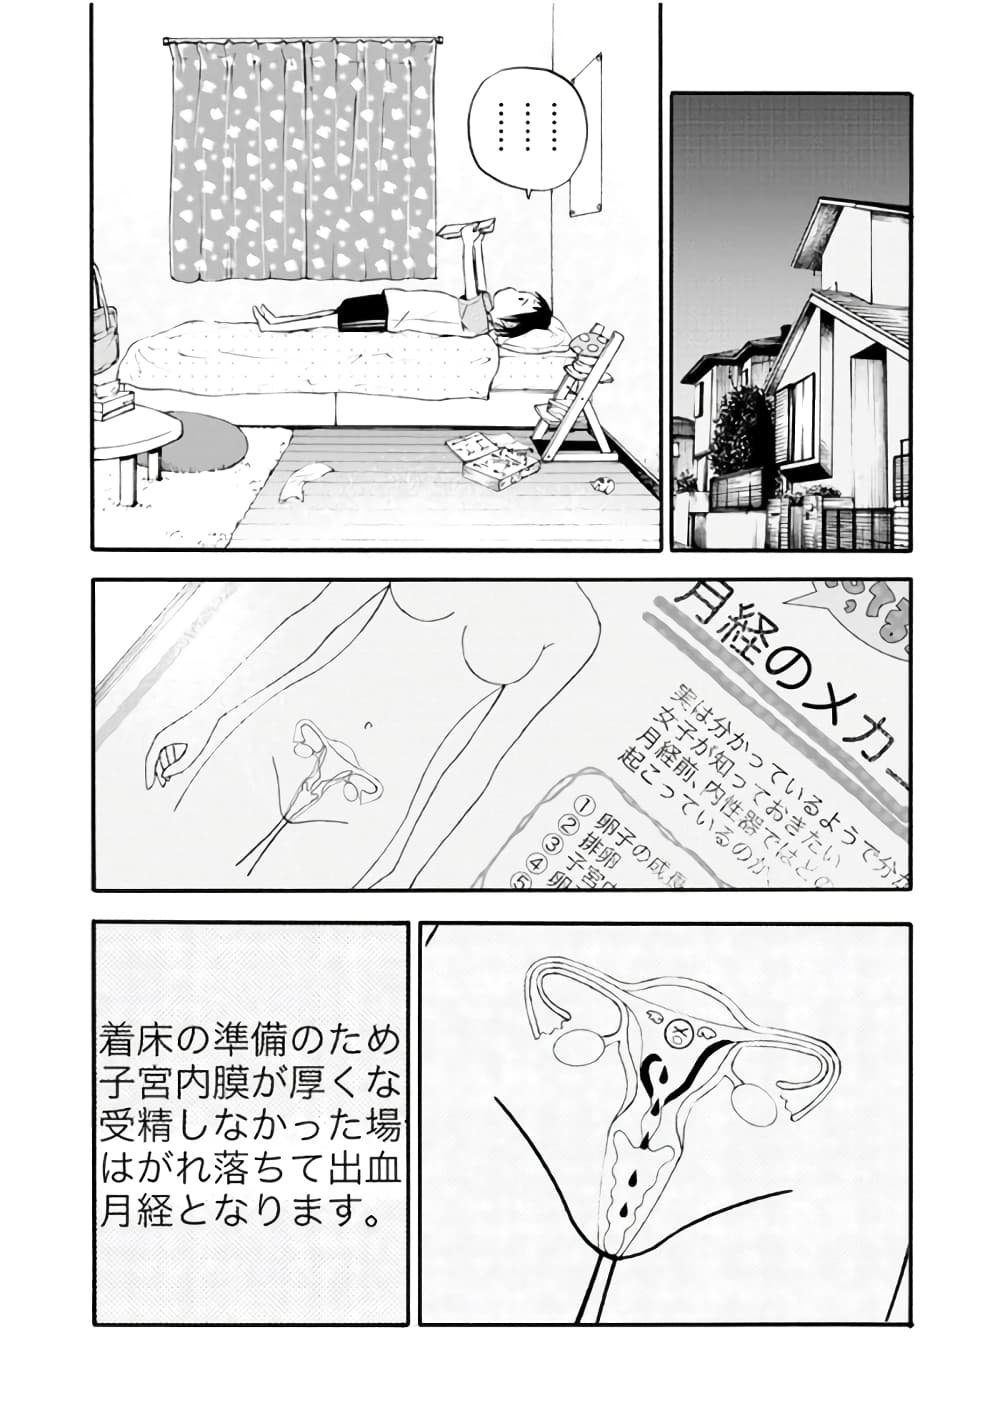 Piyo Piyo Hoikuen Aiko Sensei 1 (8)